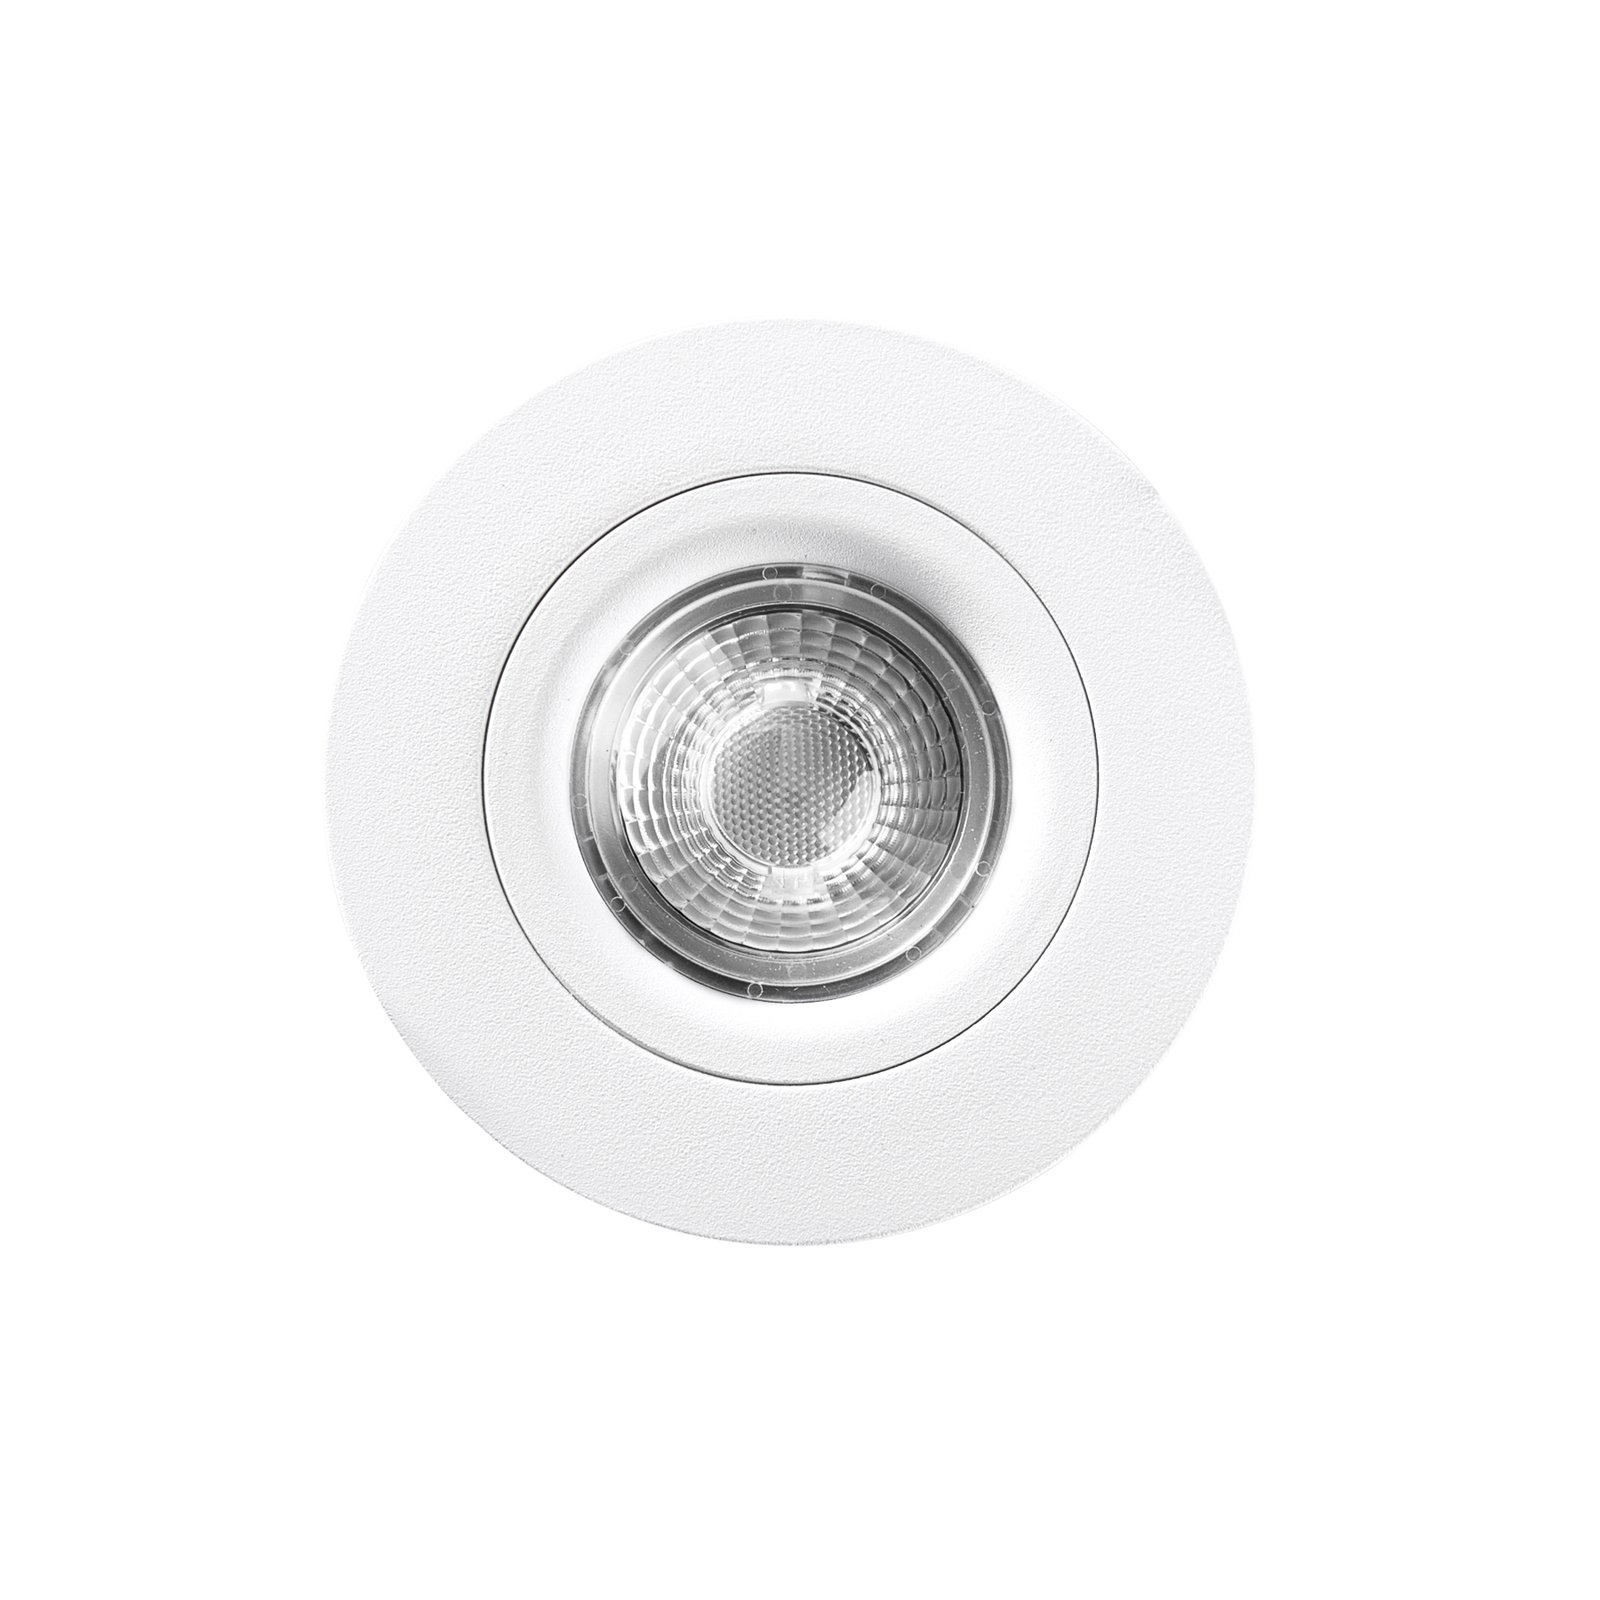 DL6809 LED downlight, round, white